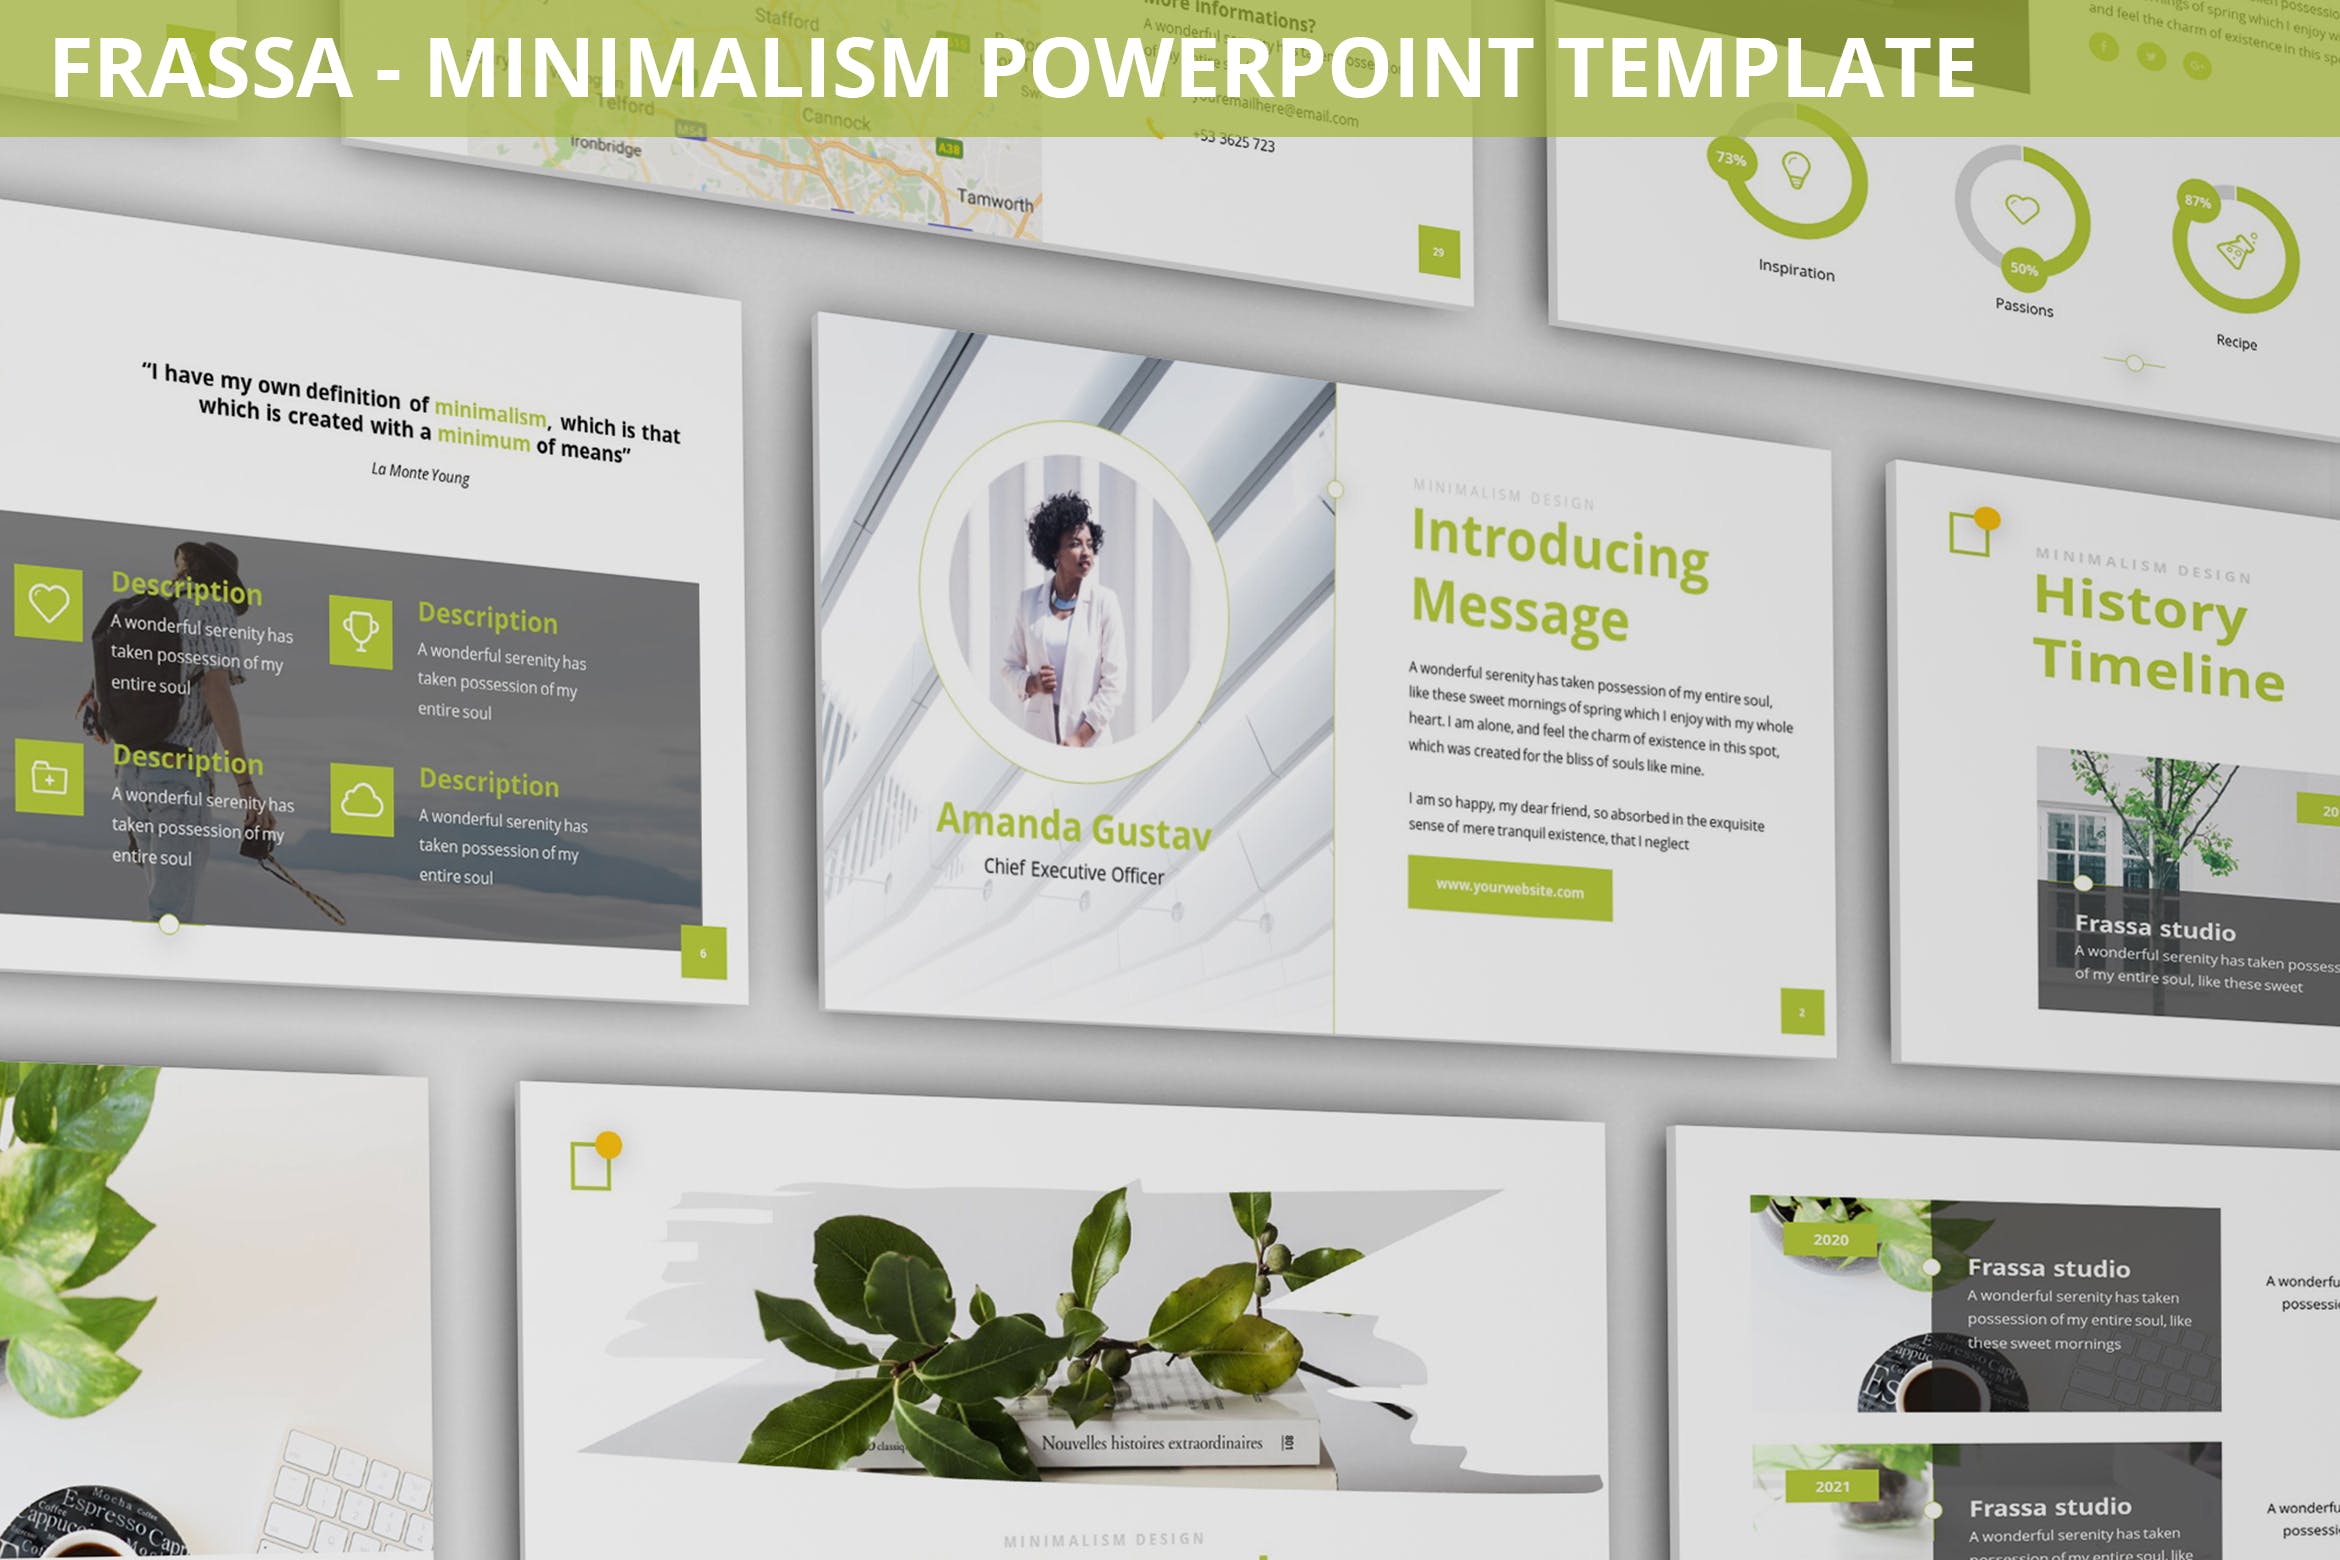 极简主义设计风格建筑/自然主题PPT幻灯片模板 Frassa – Minimalism Powerpoint Template插图